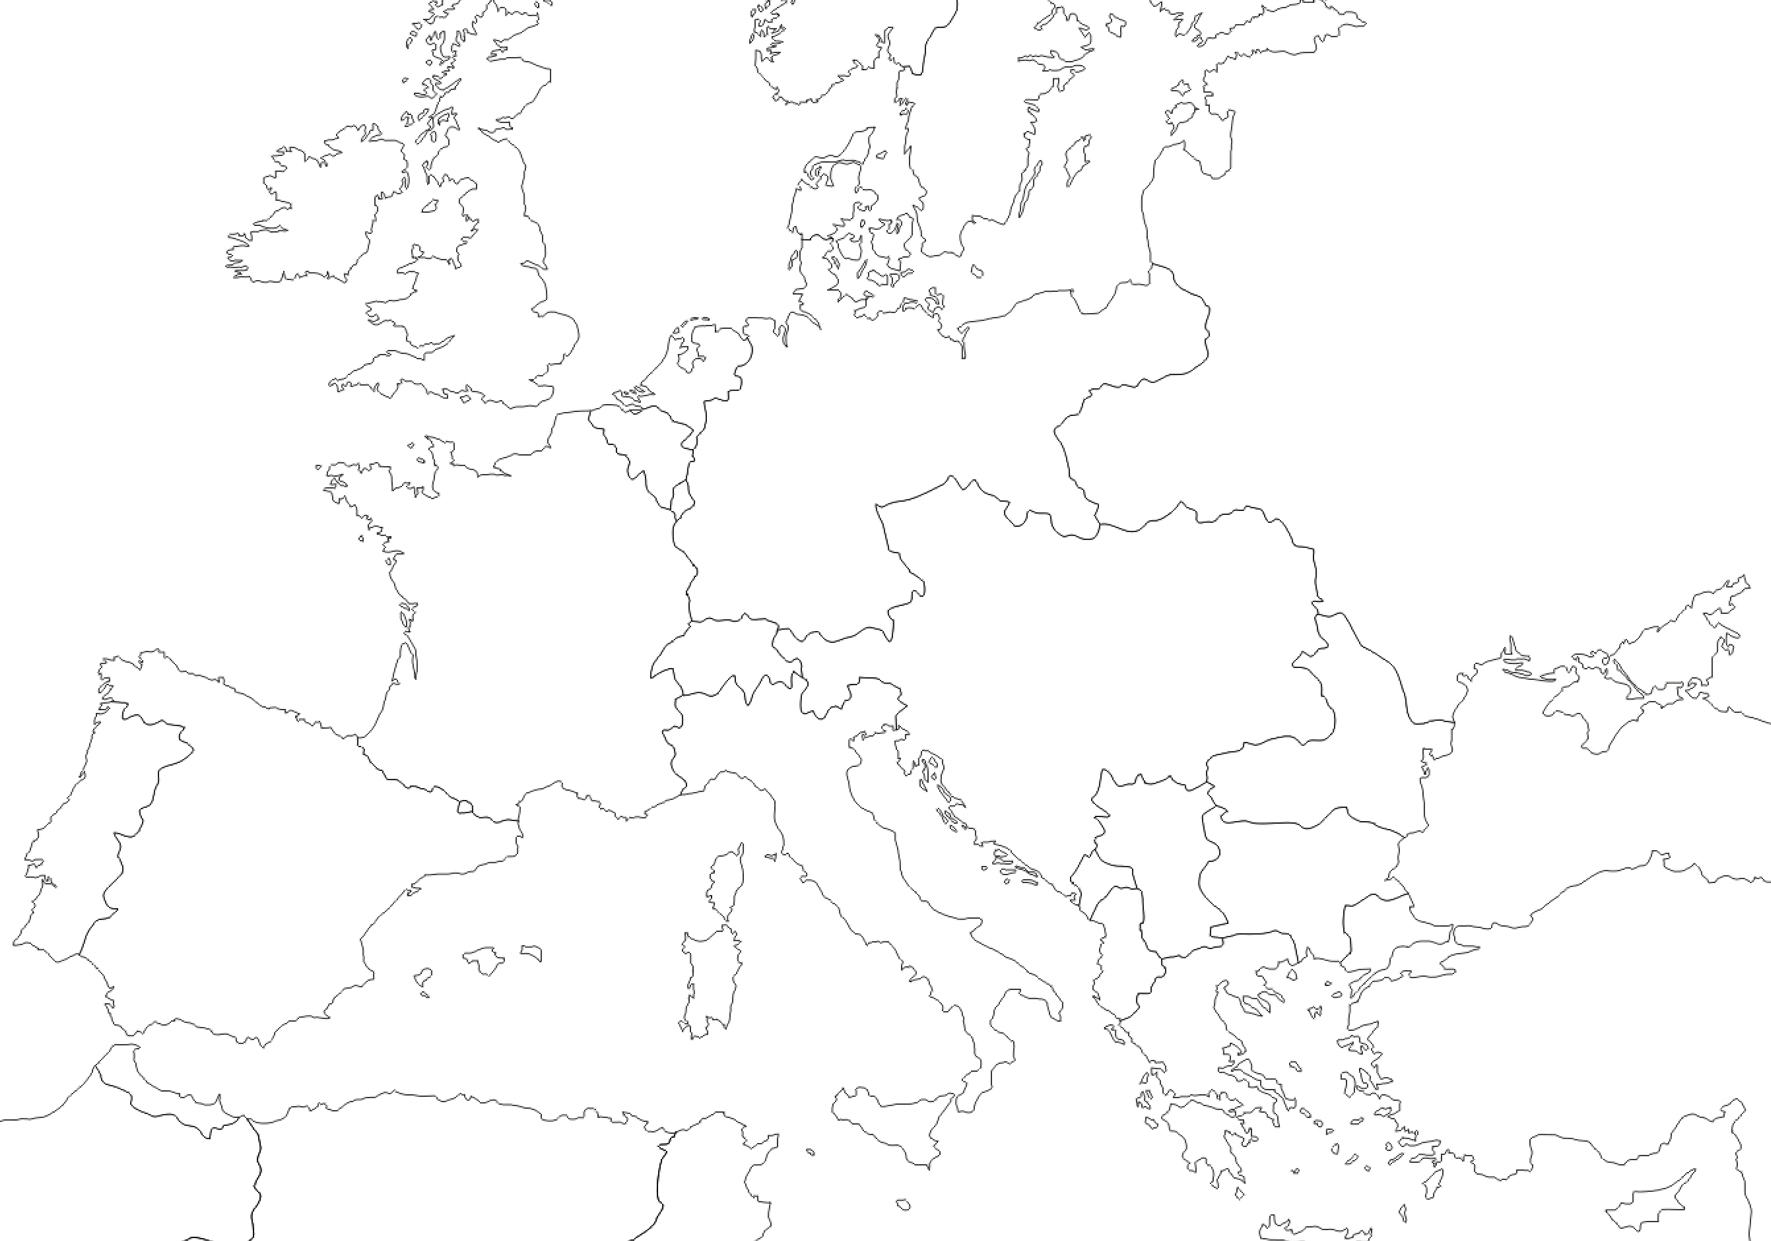 Mapa mudo político de Europa a principios del siglo XX